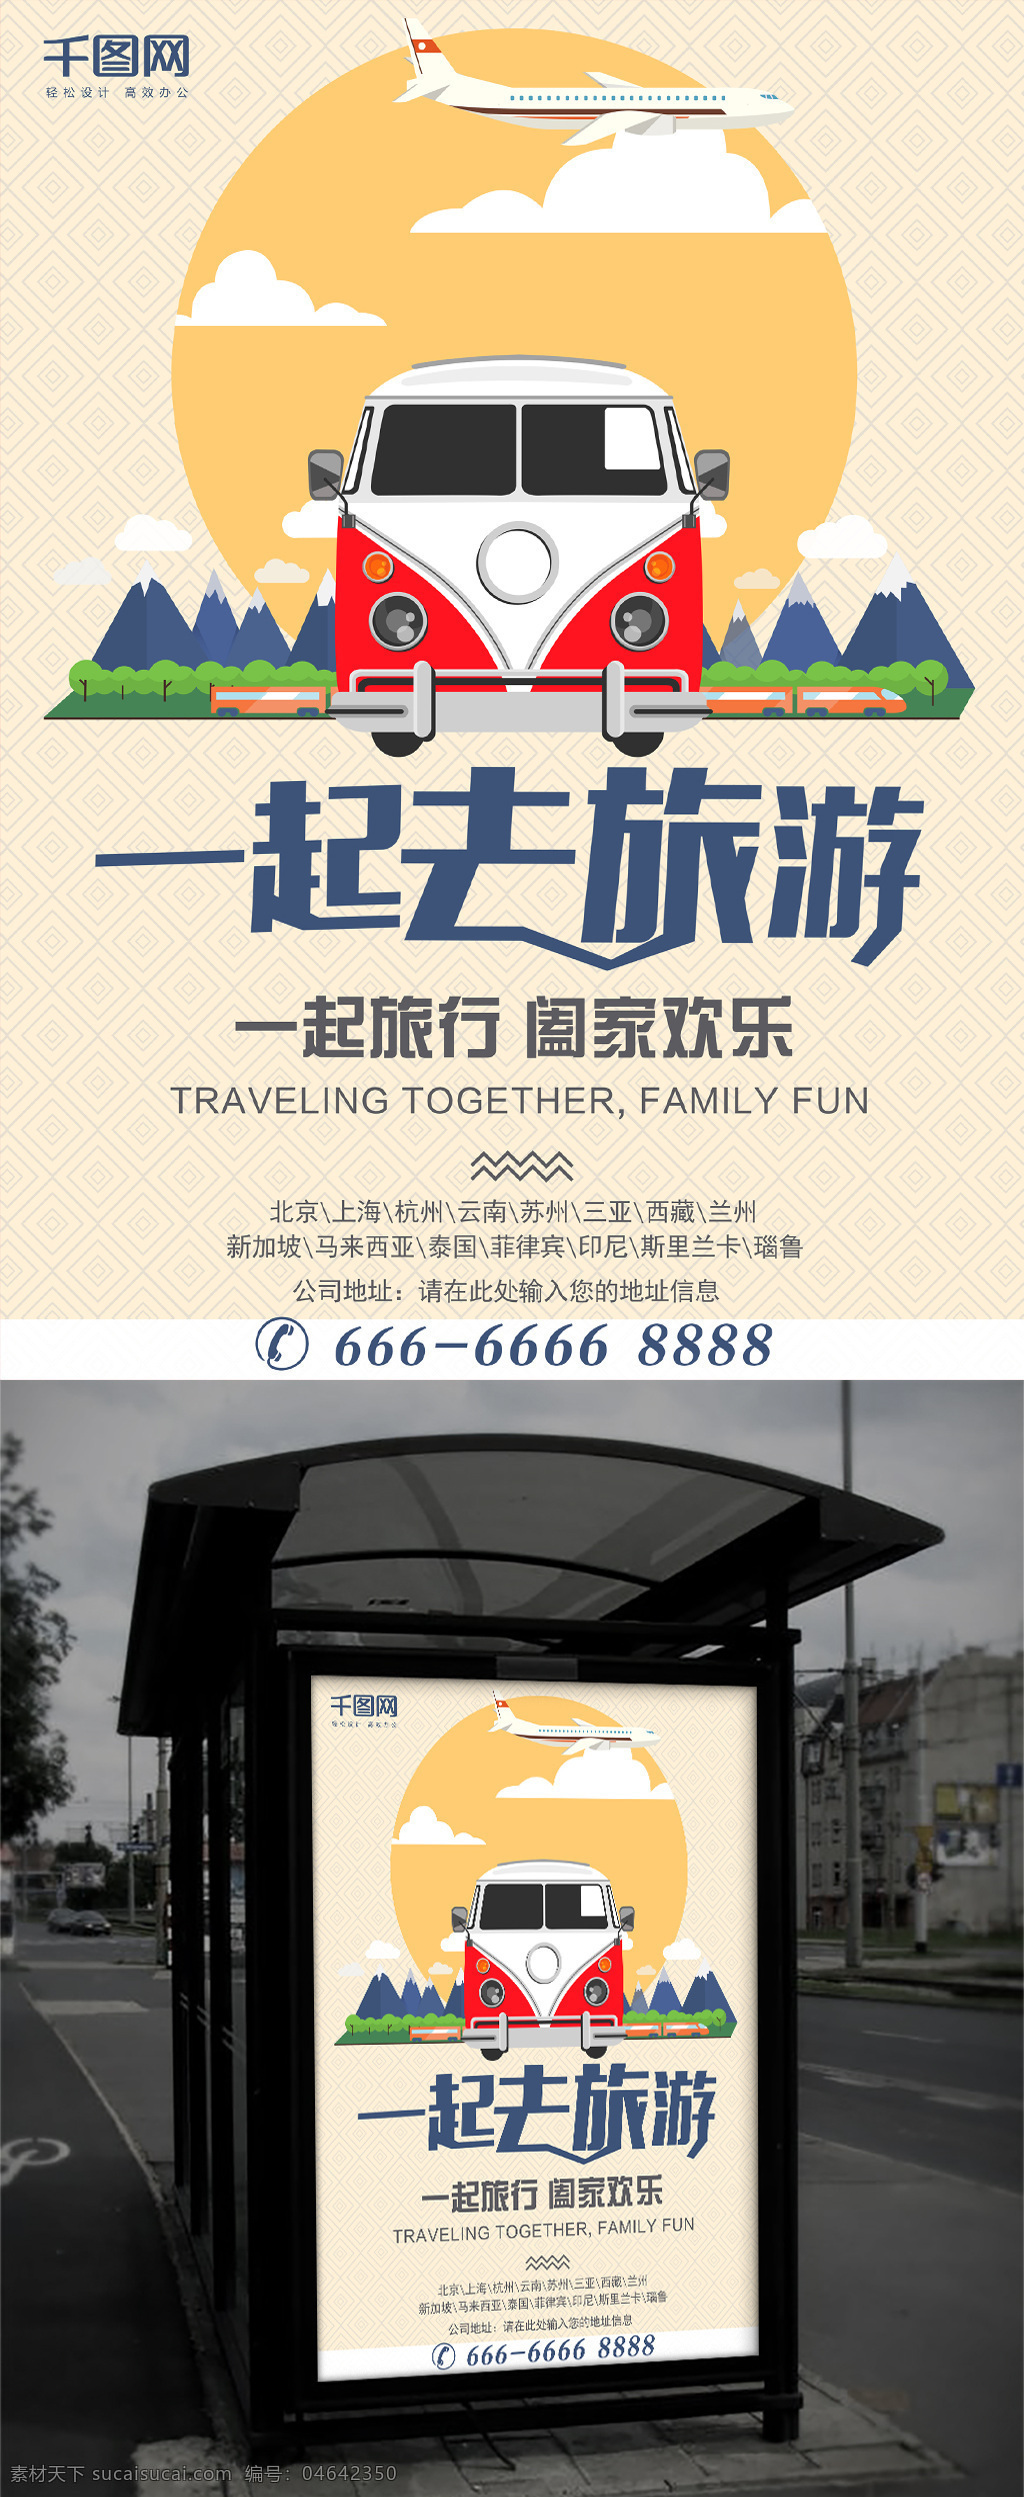 黄色 简约 旅游公司 企业 户外广告 汽车 宣传海报 旅游 公司 户外 广告 宣传 海报